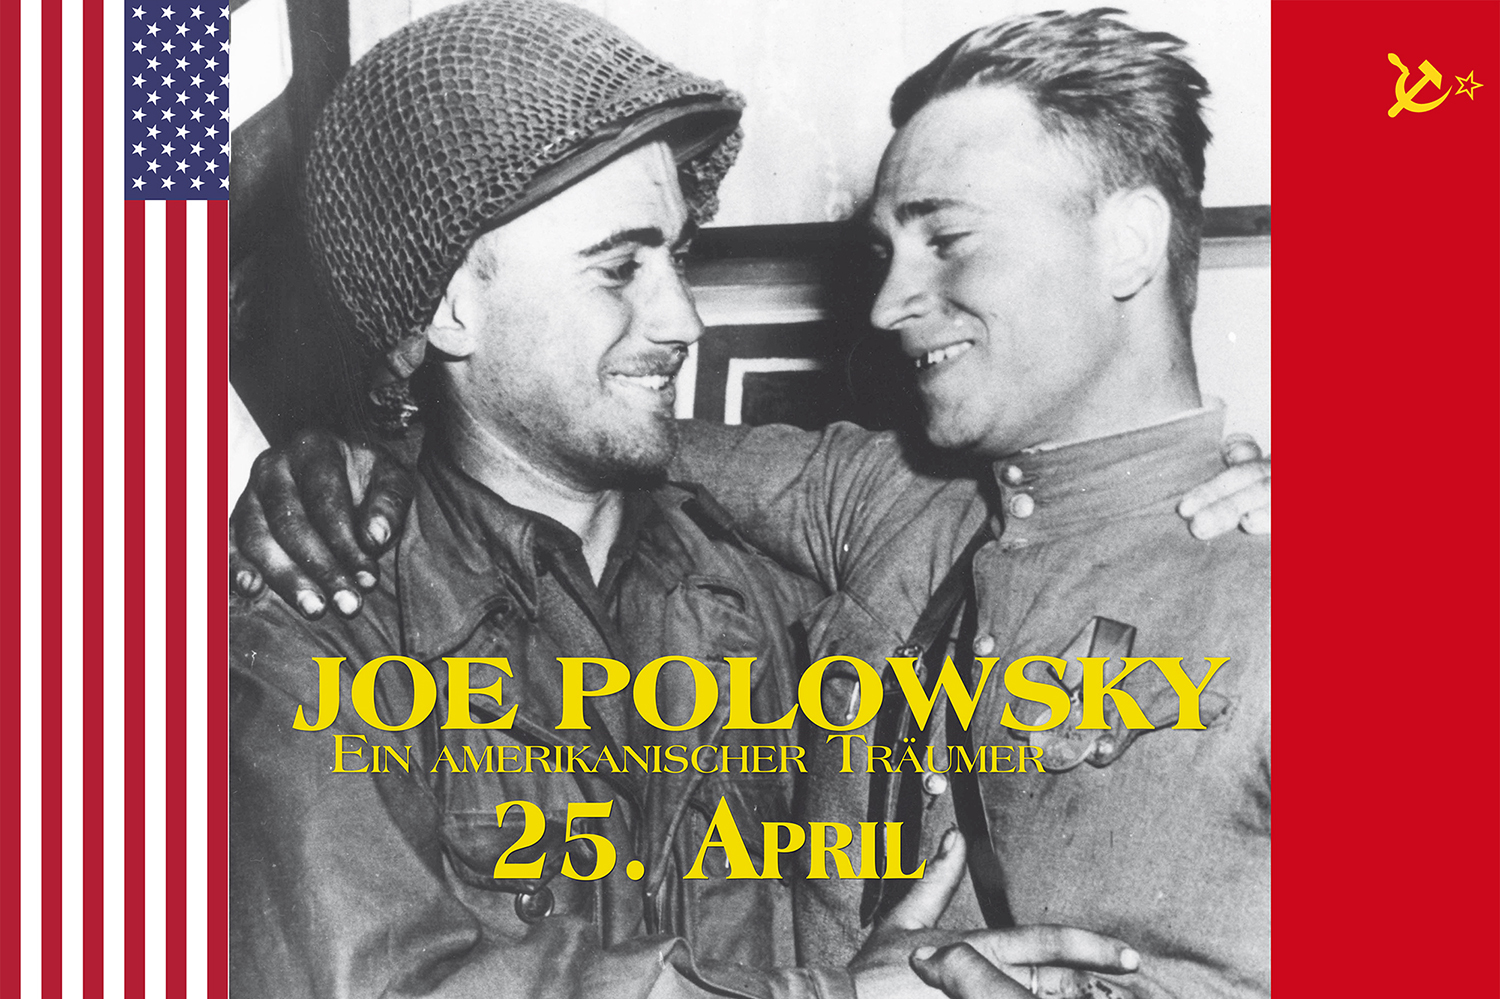 Joe Polowsky - Ein amerikanischer Träumer - mit Gästen